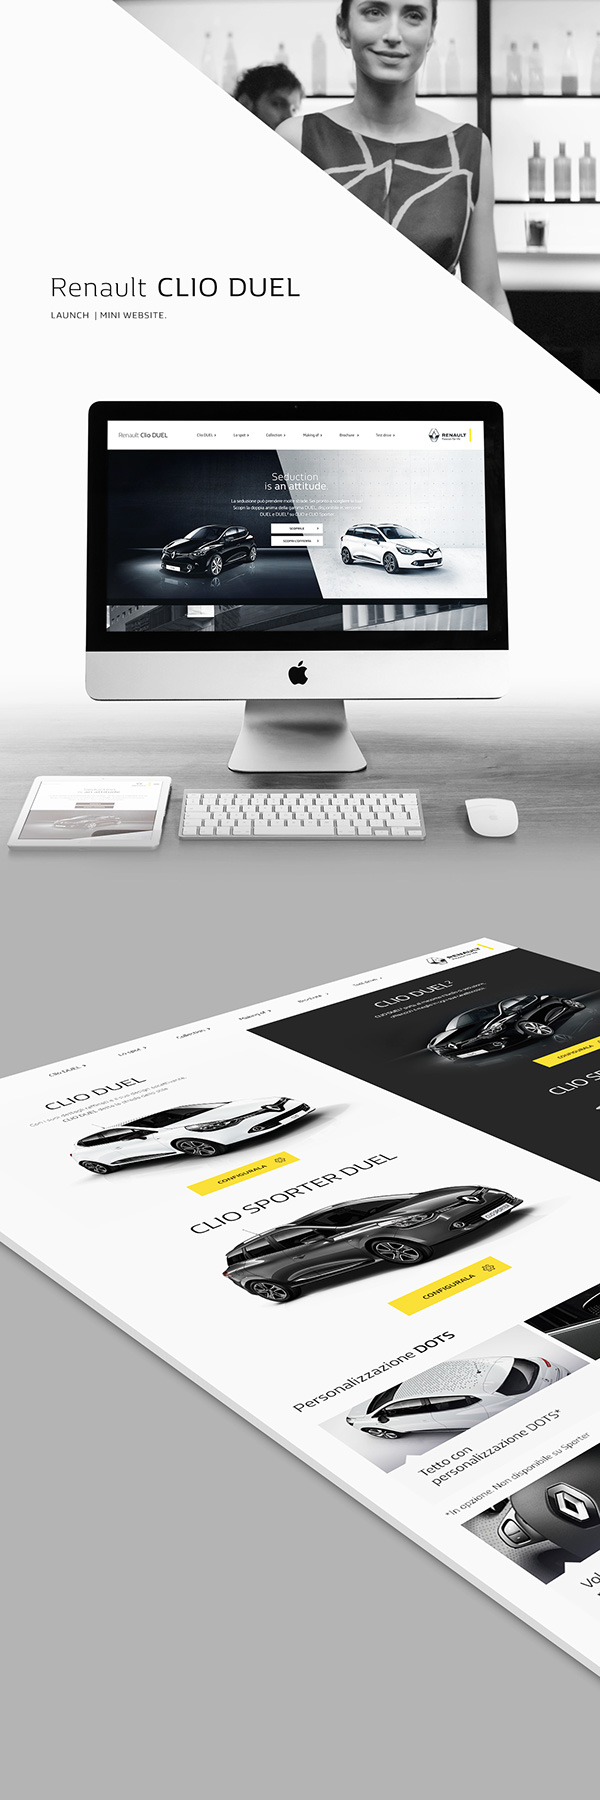 Renault CLIO DUEL Launch UI Website